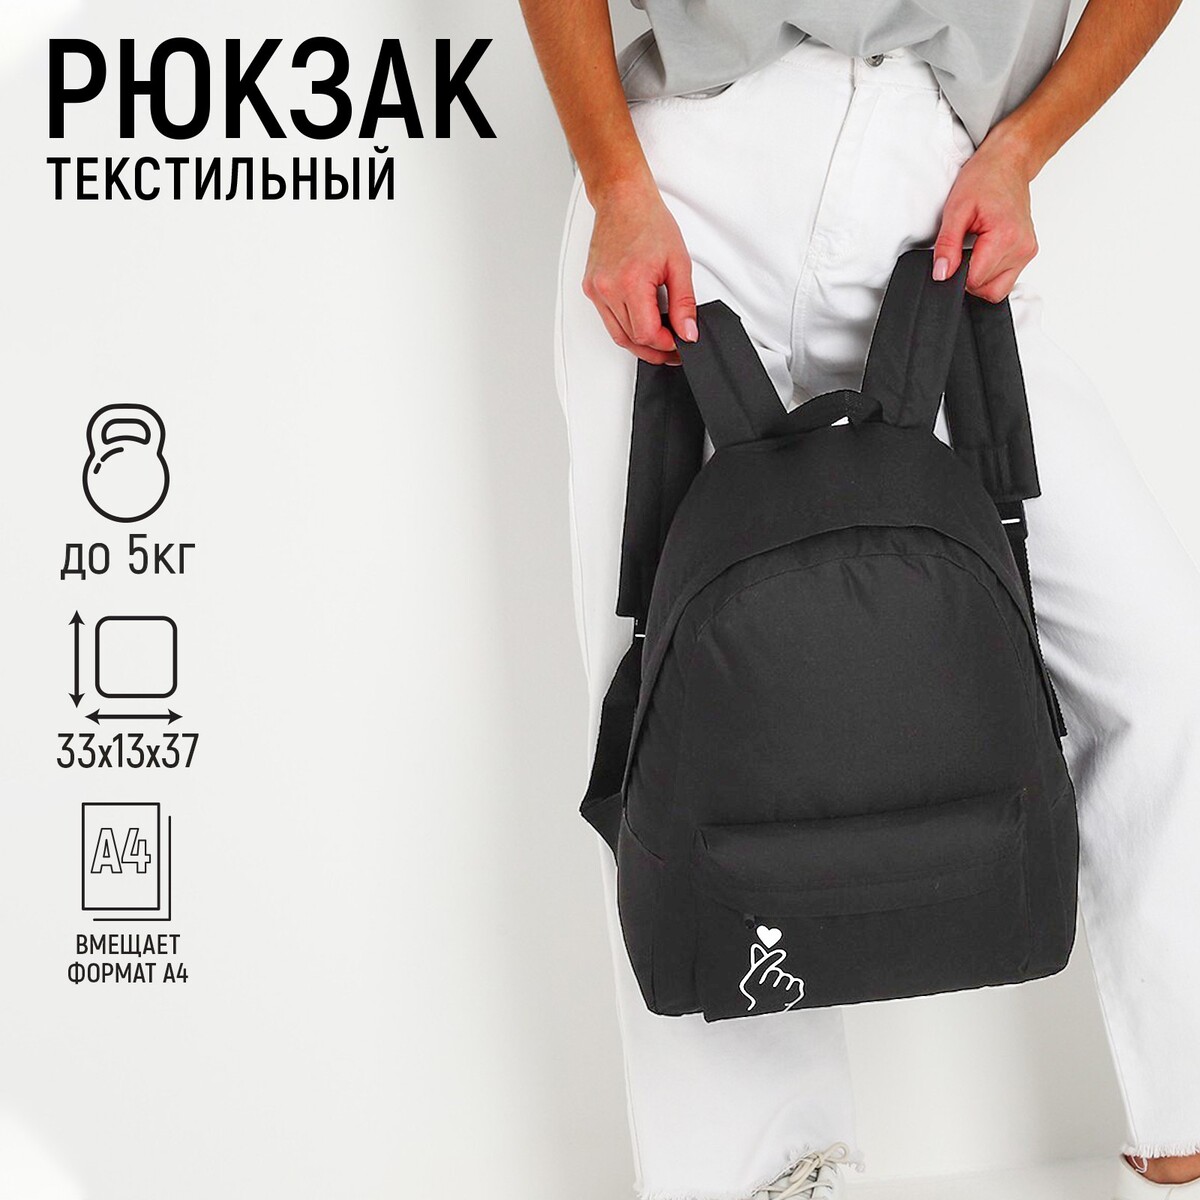 Рюкзак молодежный like, 29х12х37 см, отдел на молнии, наружный карман, цвет черный рюкзак отдел на молнии наружный карман белый